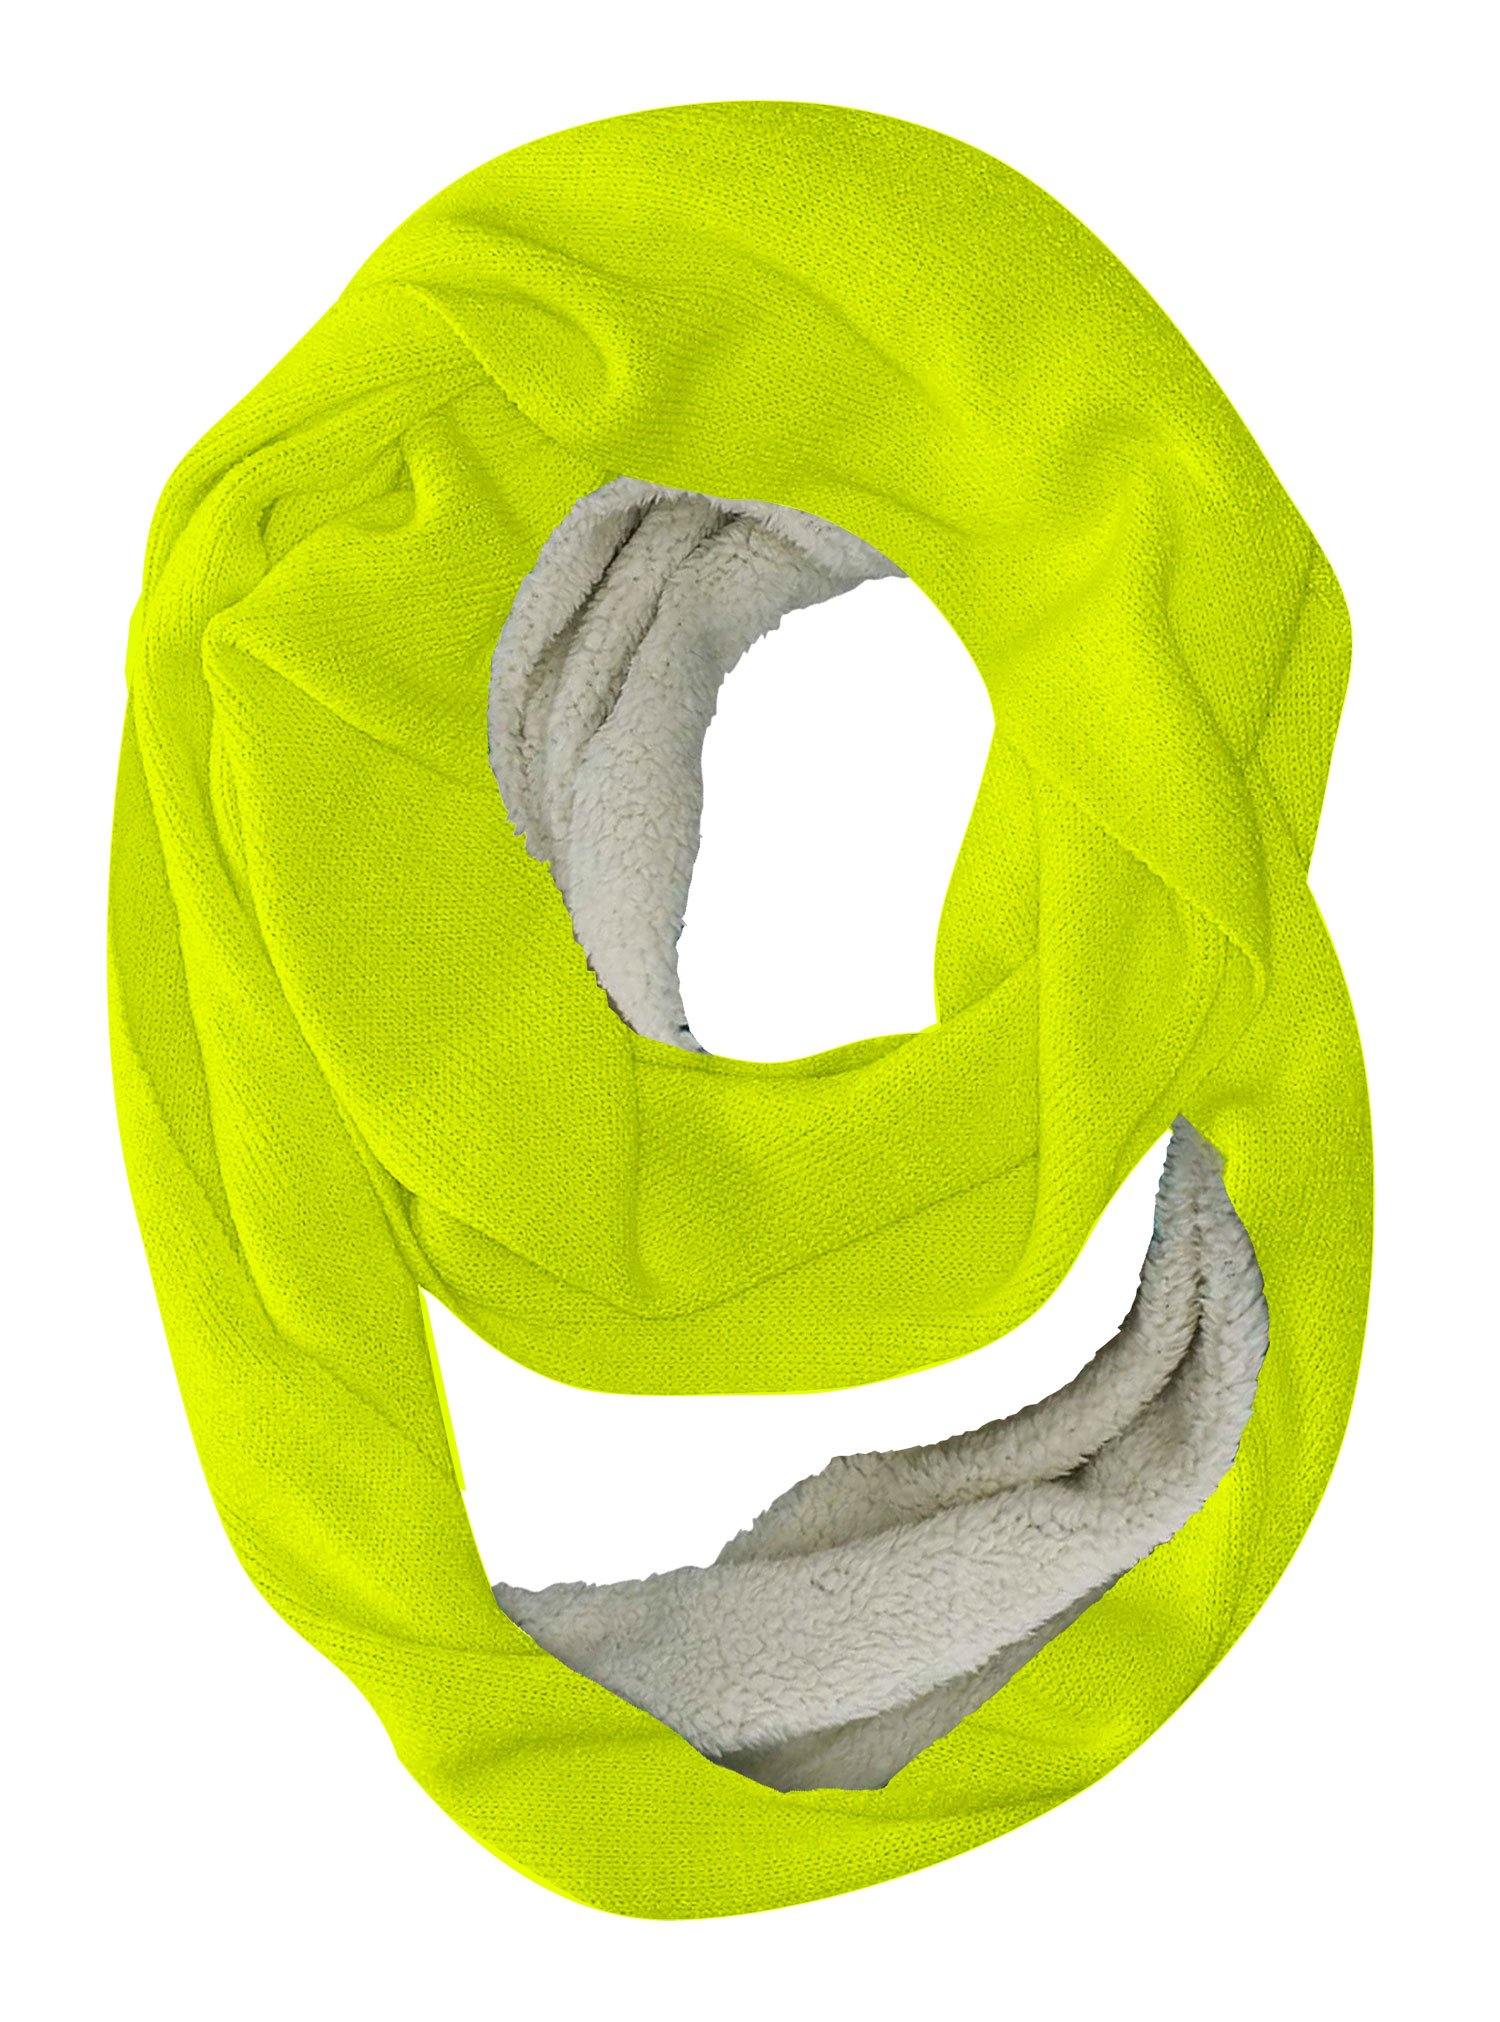 Neon Yellow Infinity Scarf - USA Made Dropship